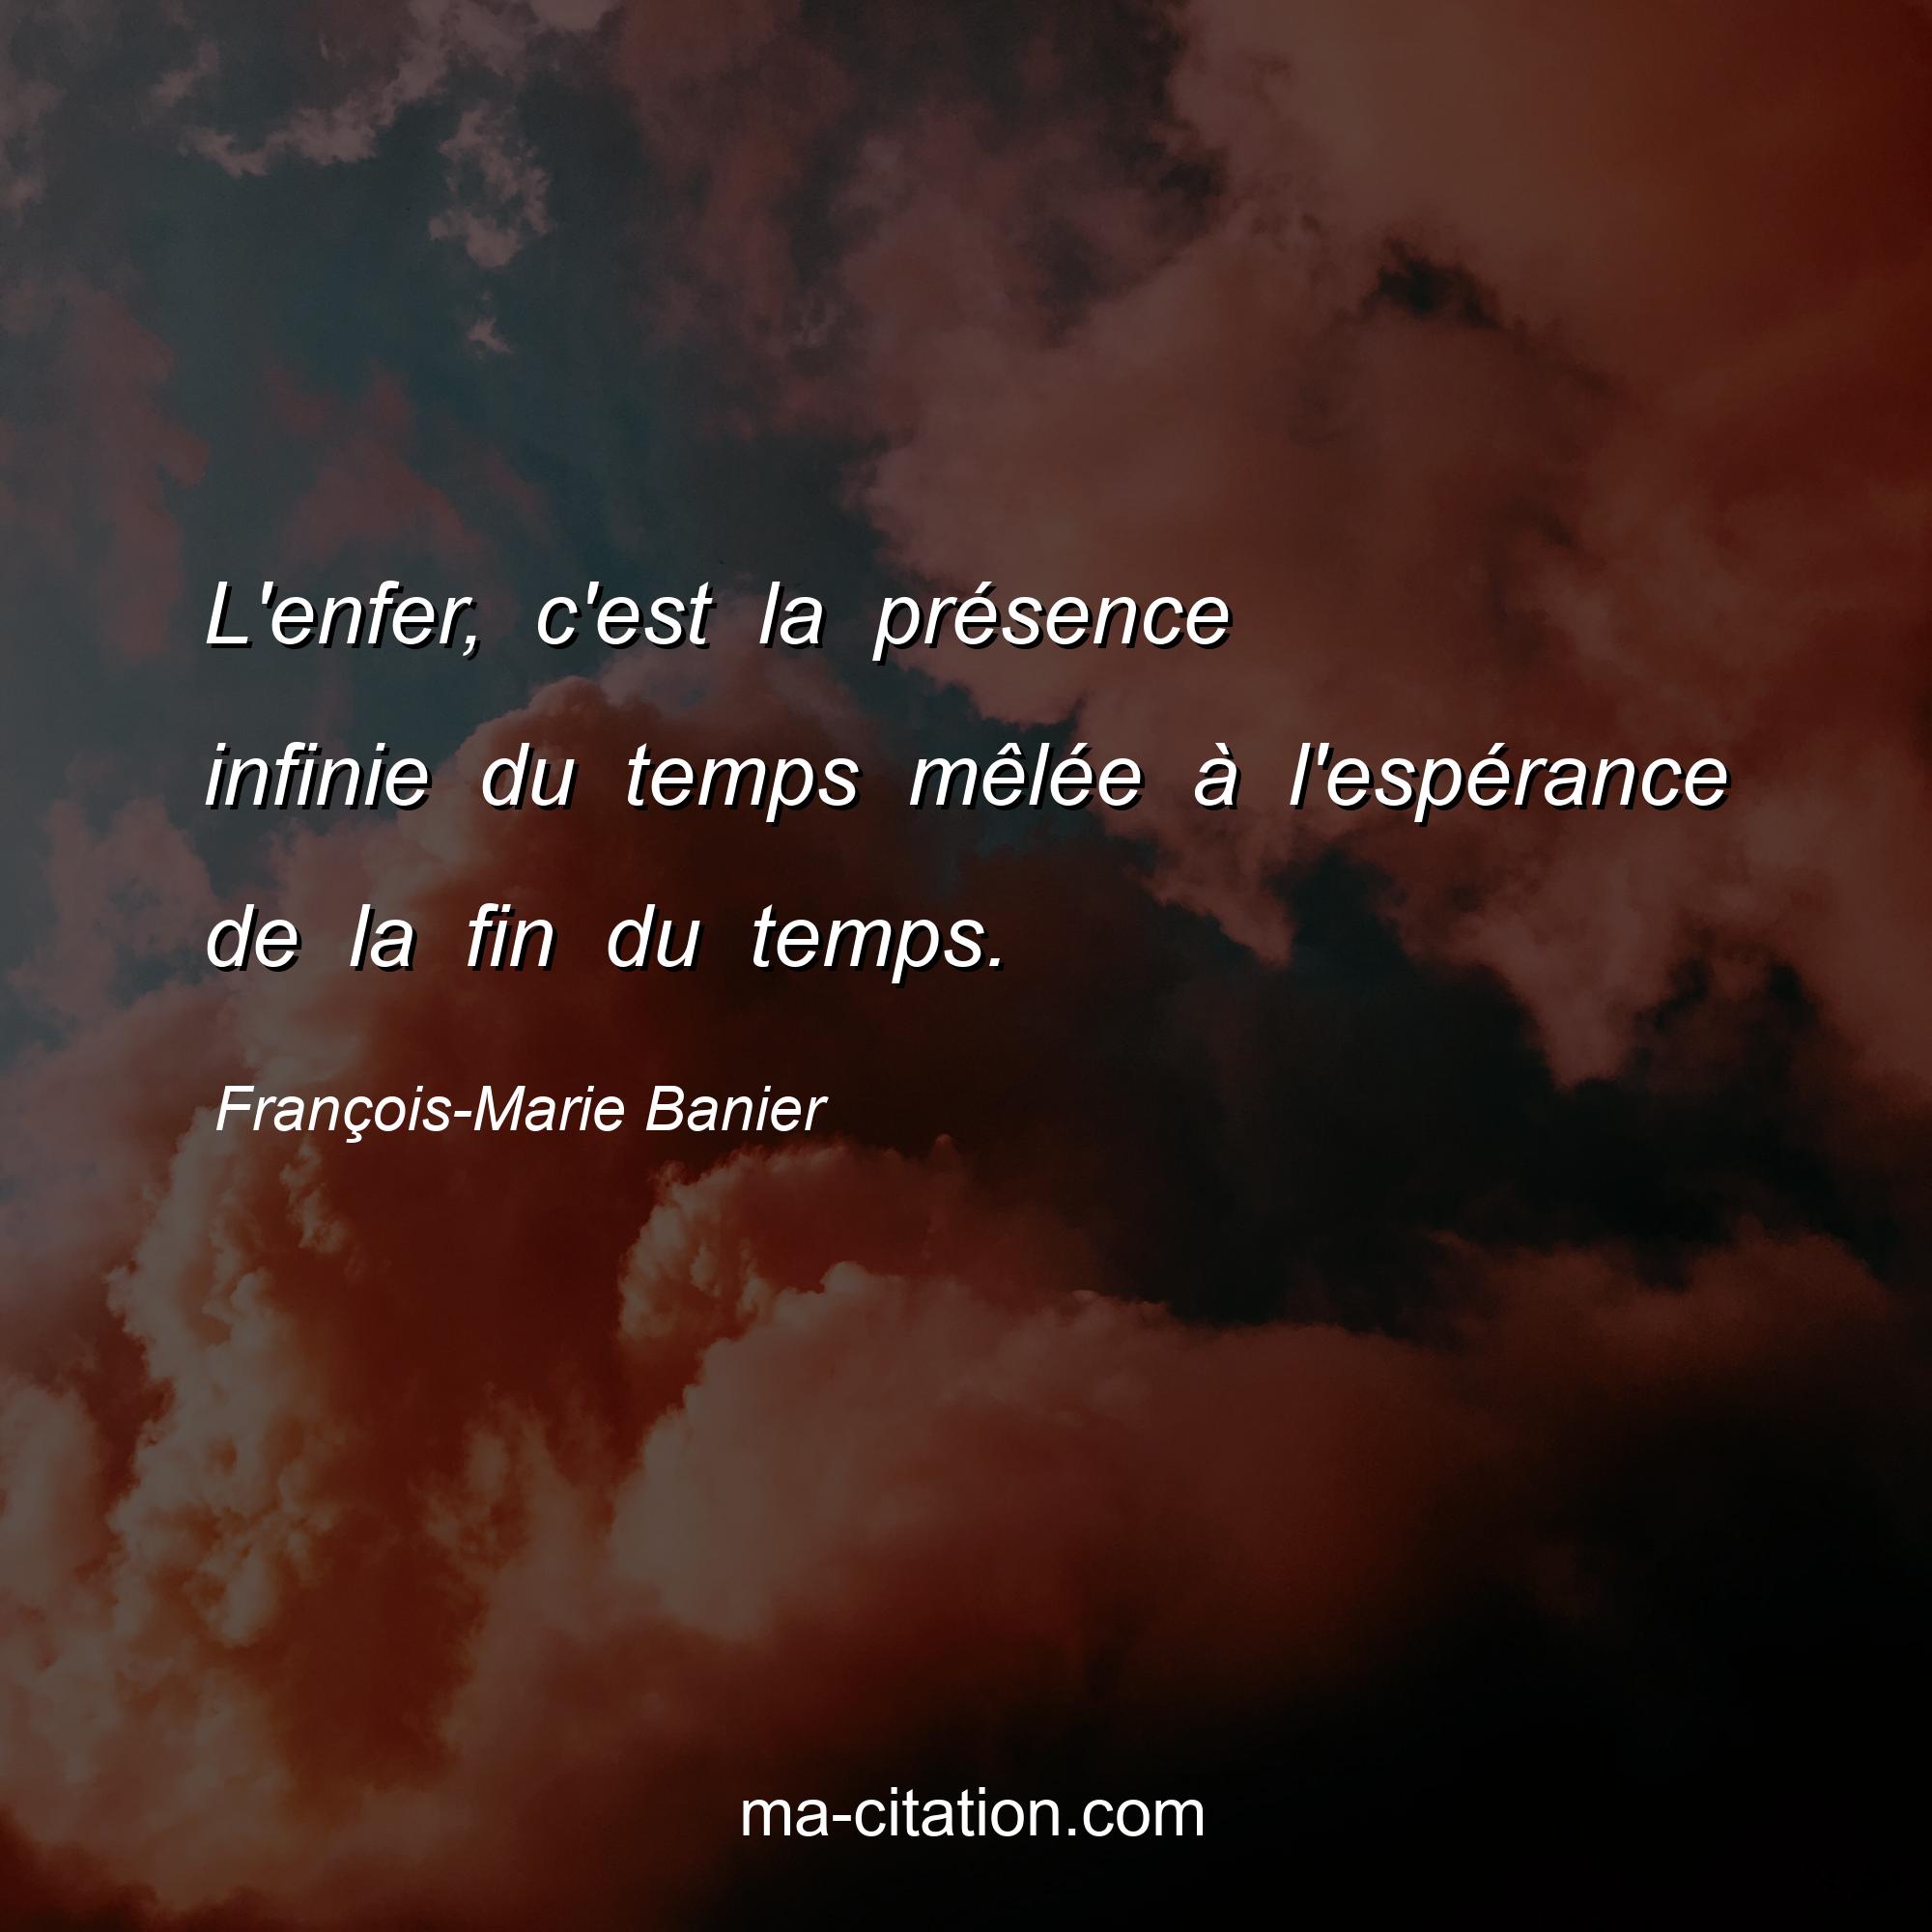 François-Marie Banier : L'enfer, c'est la présence infinie du temps mêlée à l'espérance de la fin du temps.